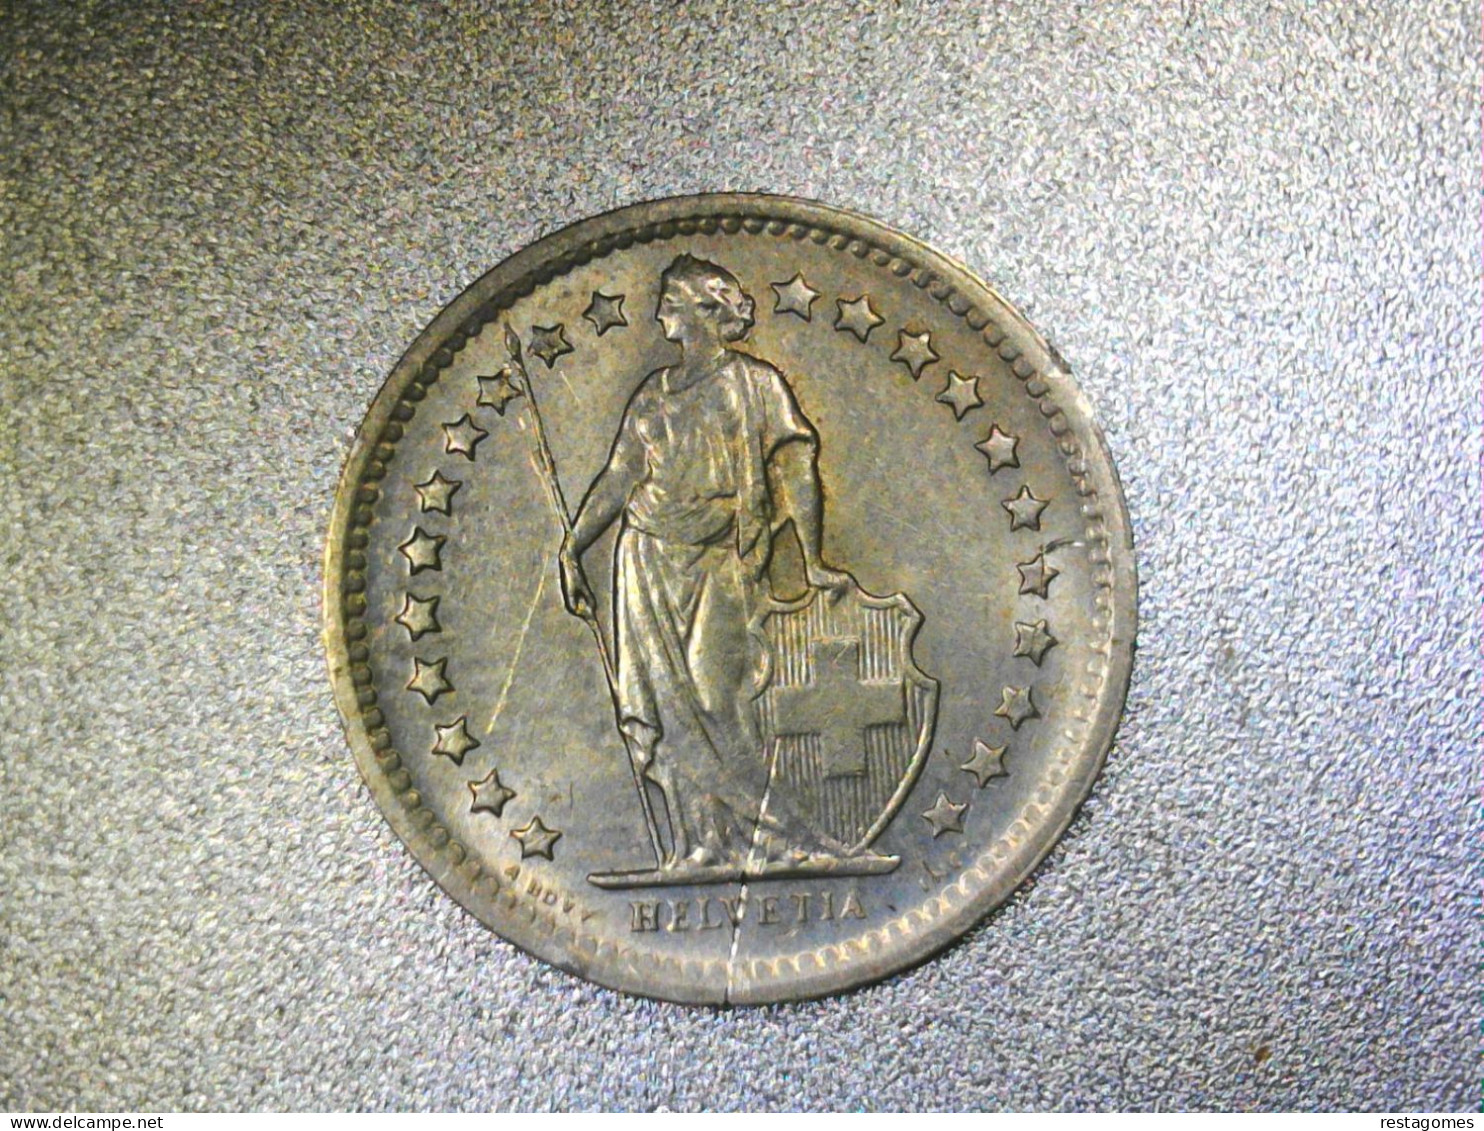 Switzerland 1971 1 Franc 1971 - Swaziland